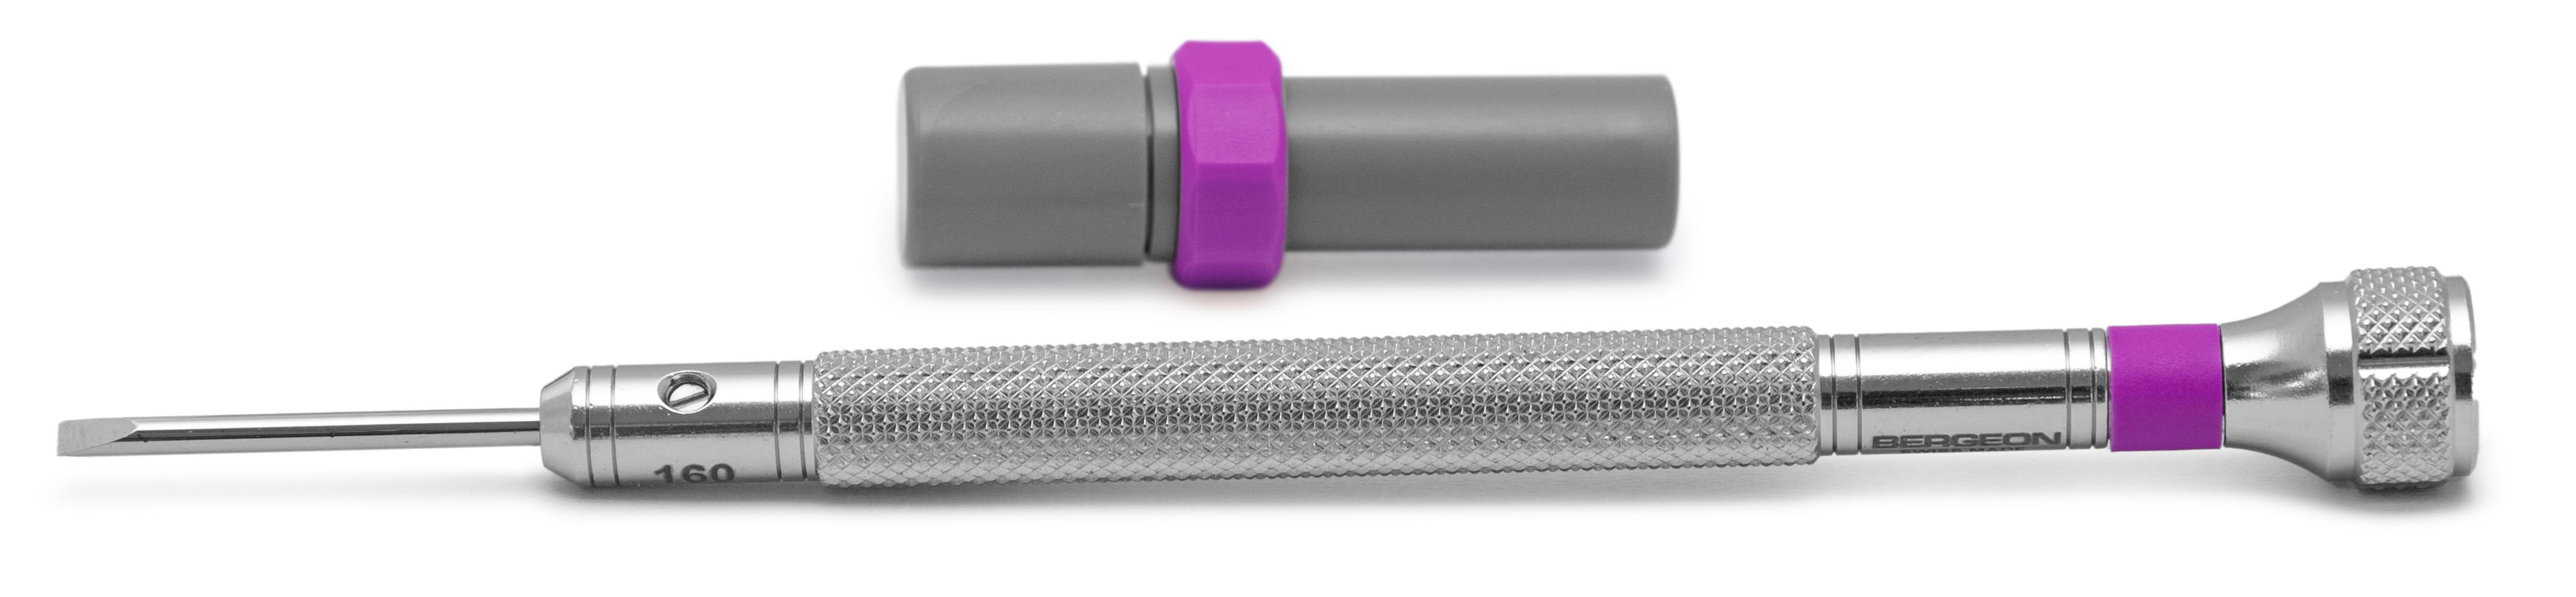 Bergeon 30080-H Schraubendreher, Klinge 1,6 mm, violett, mit Ersatzklingen